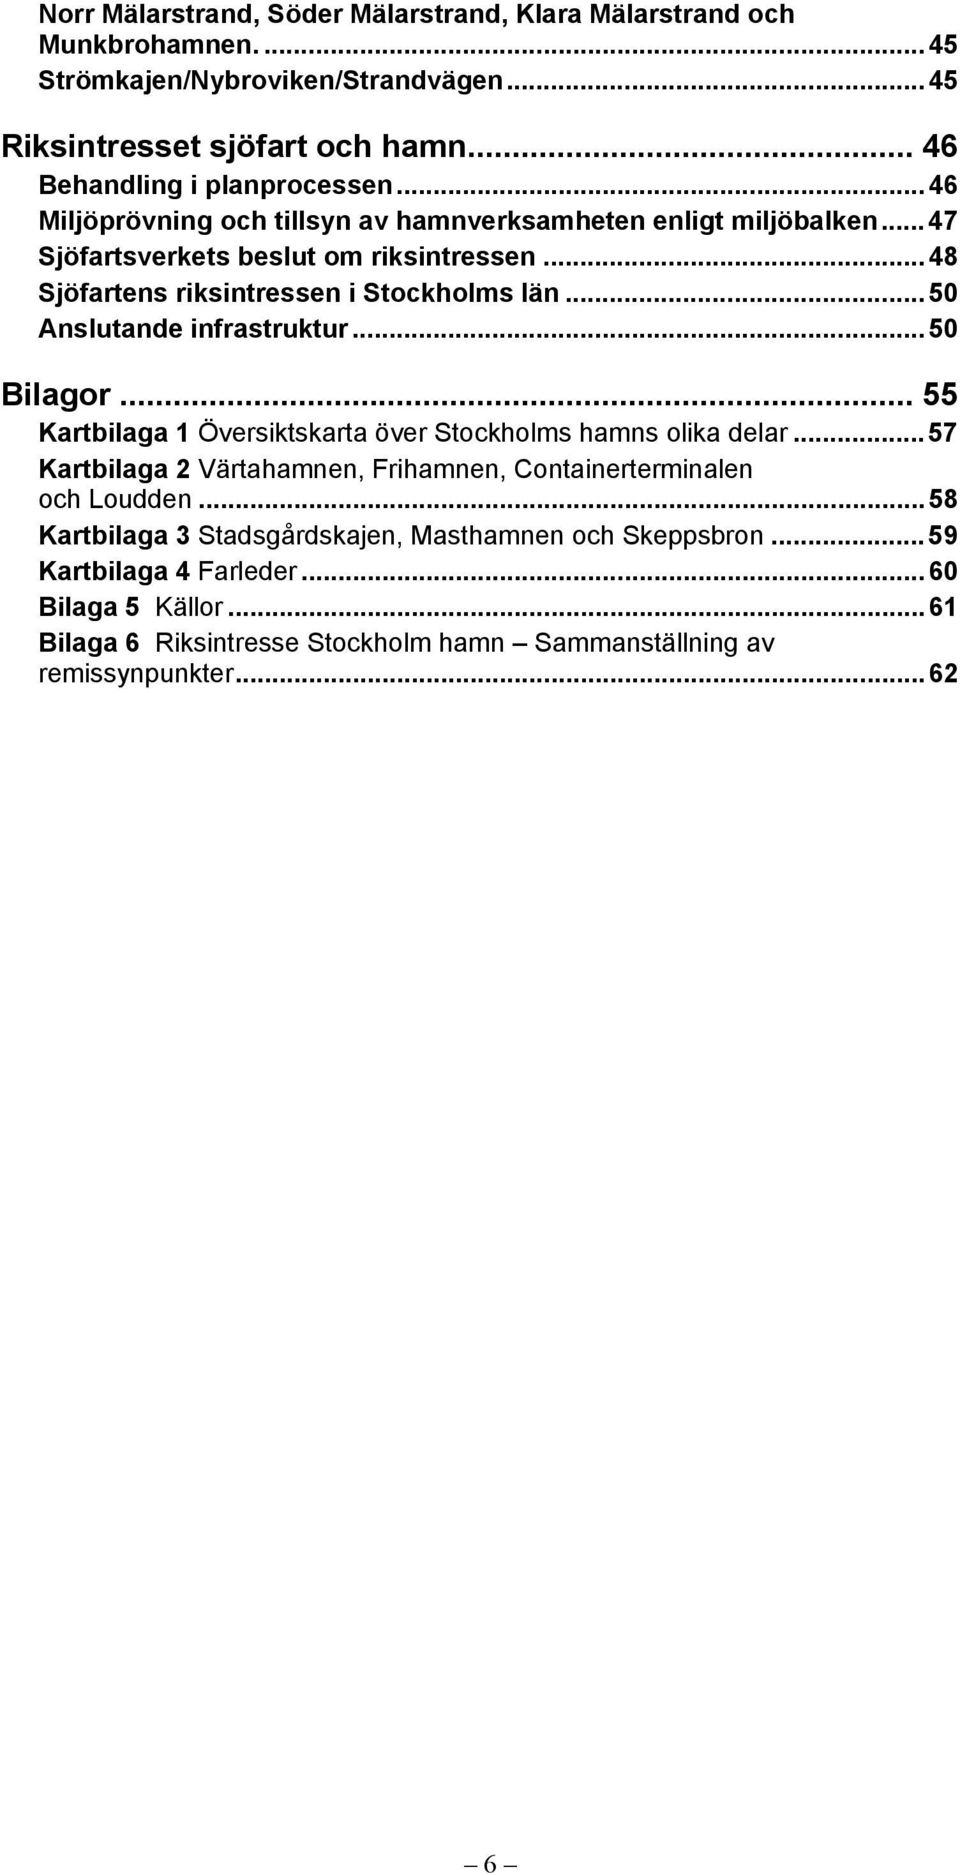 .. 50 Anslutande infrastruktur... 50 Bilagor... 55 Kartbilaga 1 Översiktskarta över Stockholms hamns olika delar.